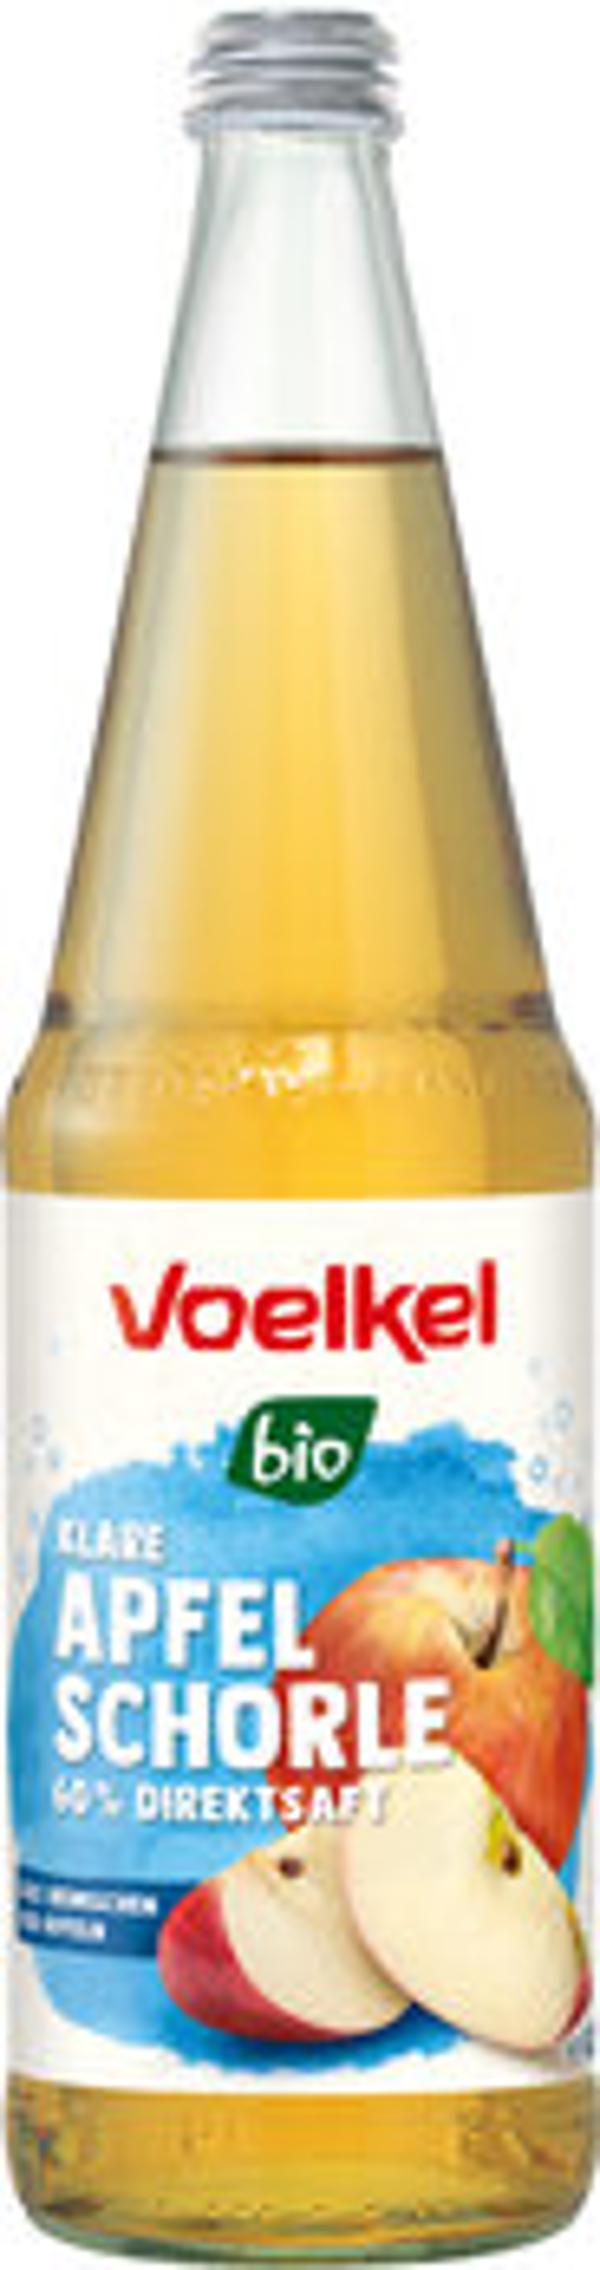 Produktfoto zu Voelkel Apfel-Schorle 0,7L